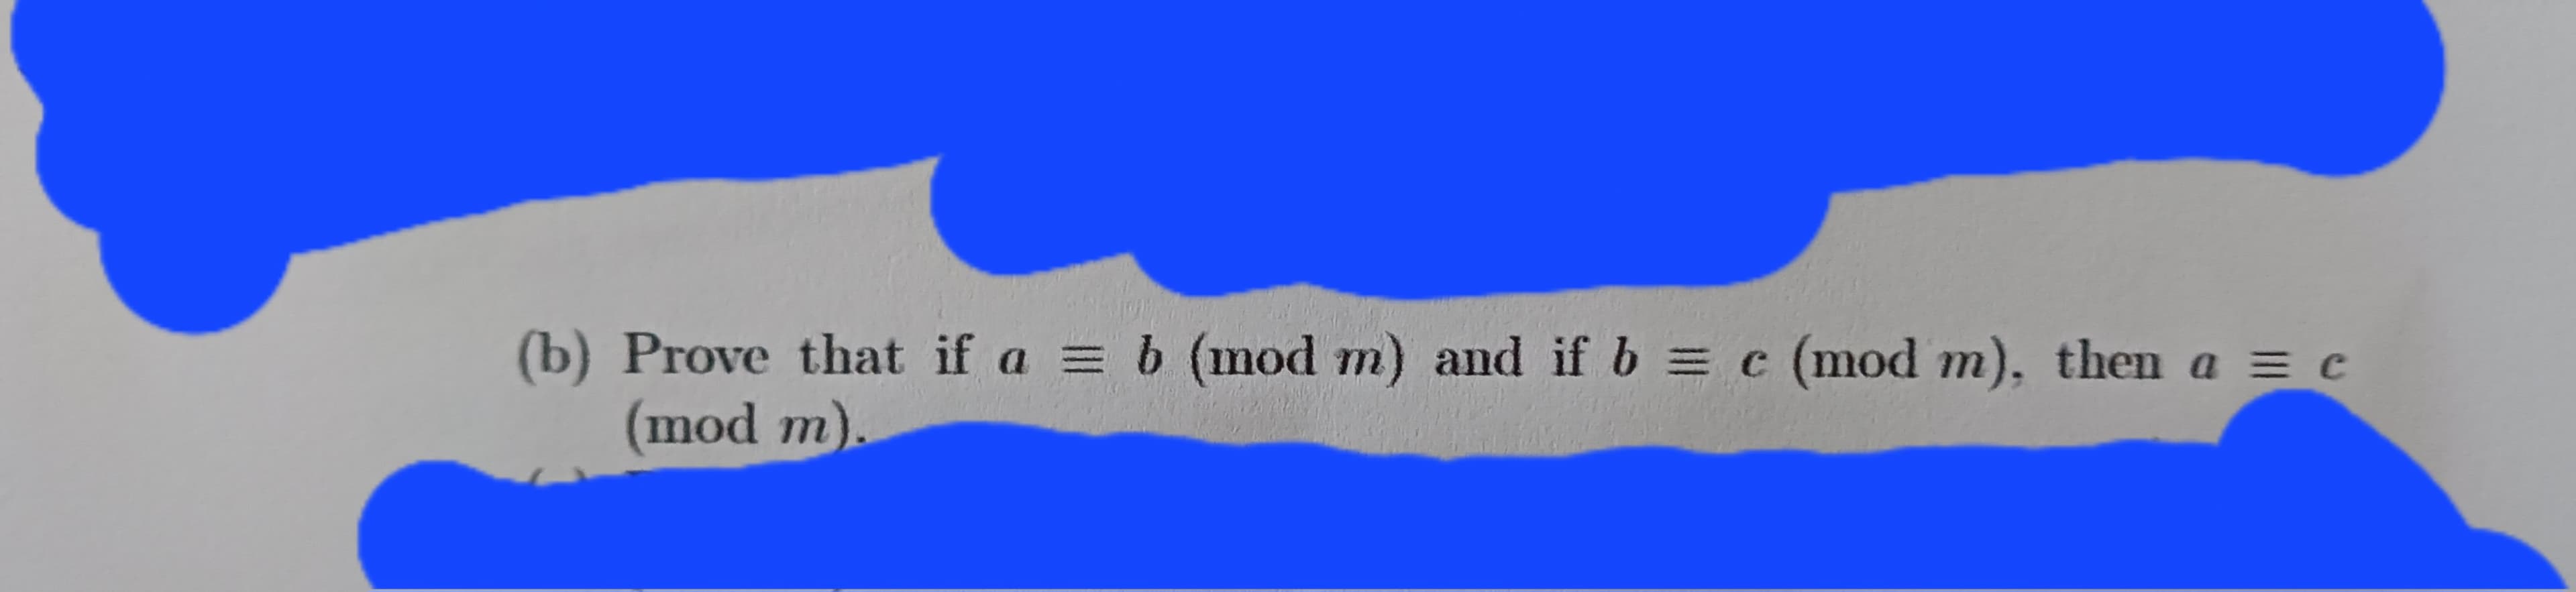 (b) Prove that if a = b (mod m) and if b = c (mod m), then a = c
(mod m).